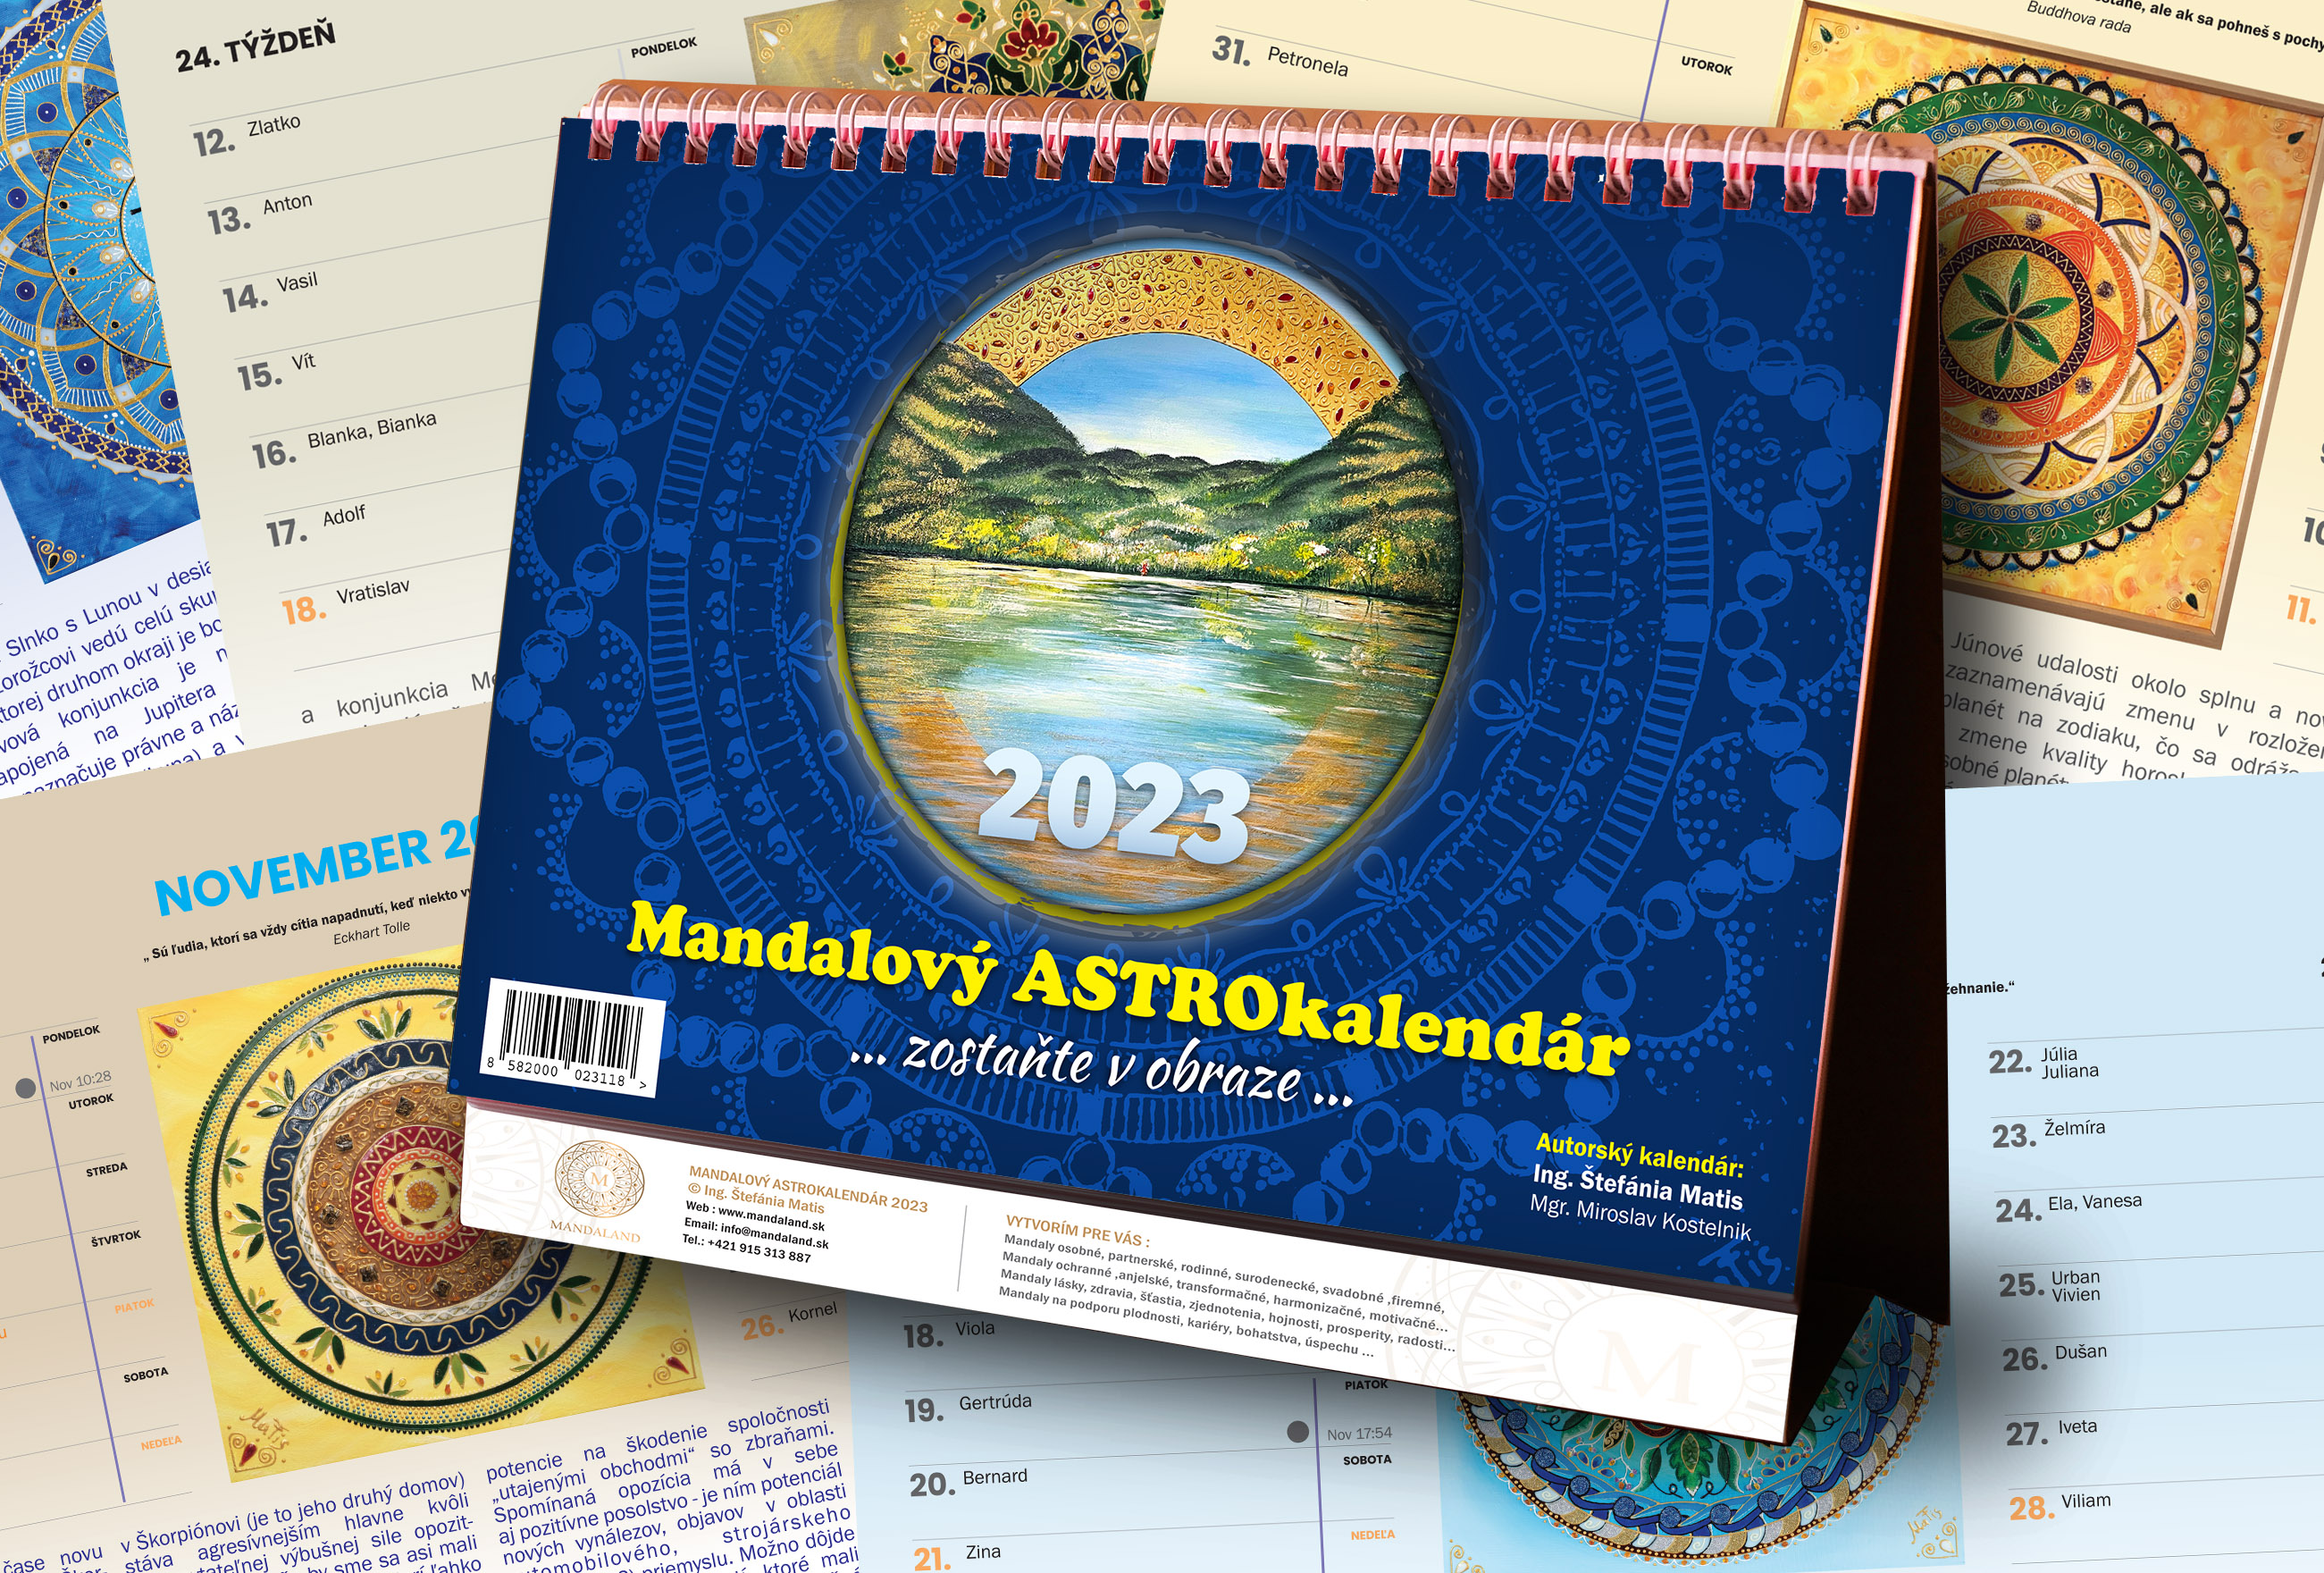 Mandalový astro-kalendár 2023 “ zostaňte v obraze“_product